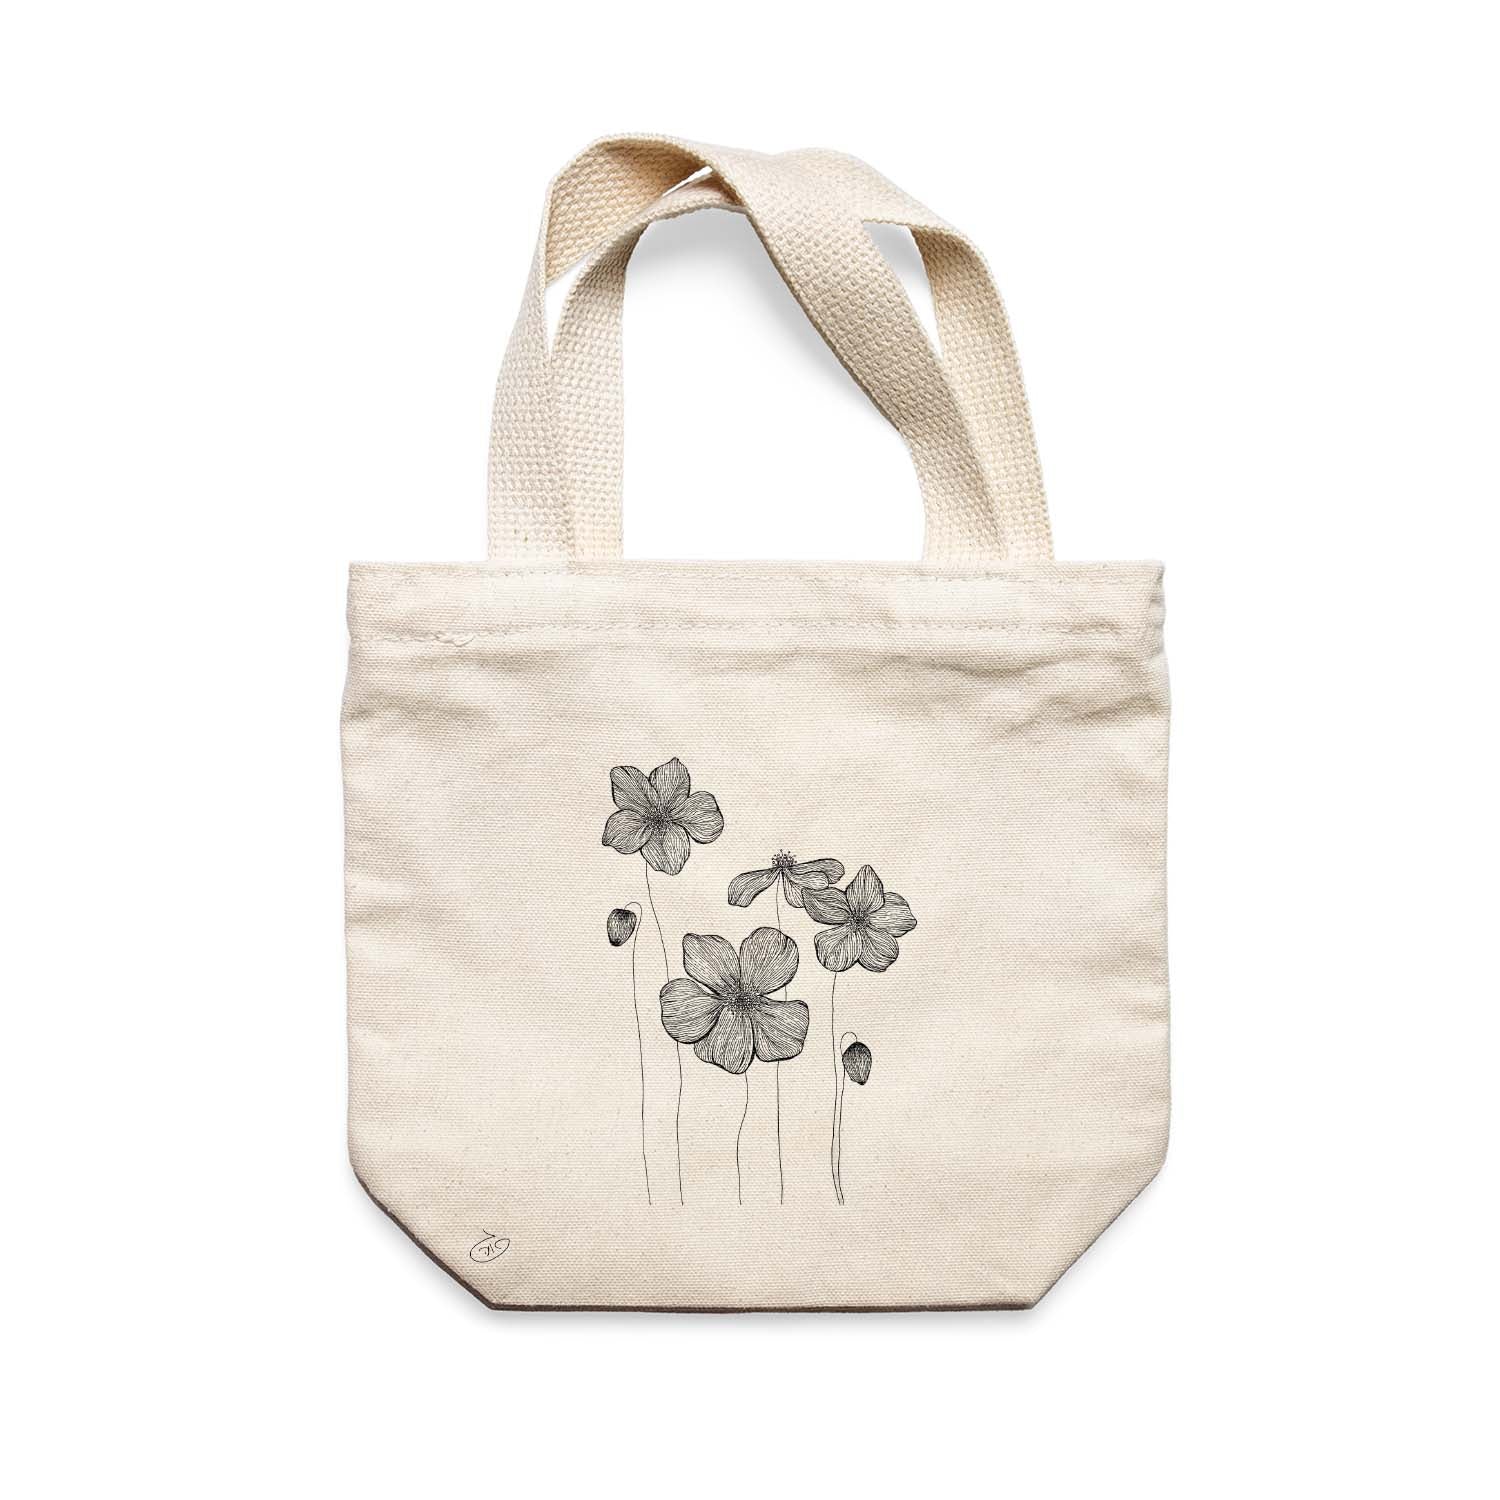 תיק צד לנשים וגברים מבד 100% כותנה טבעית בעיצוב Poppies Flowers Tote Bag מציור מקורי של גאיה